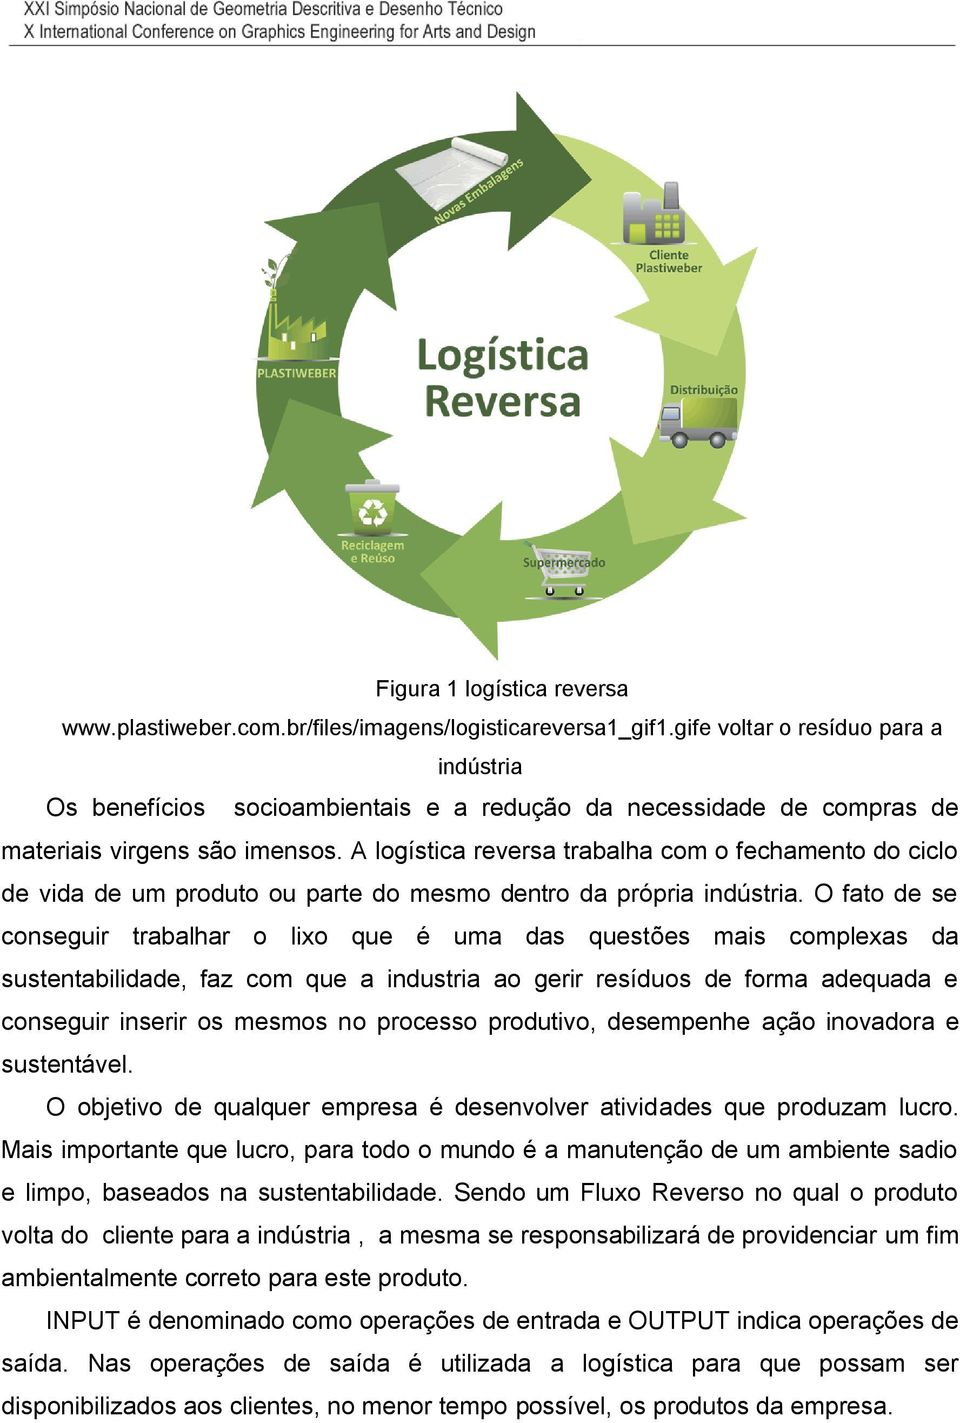 A logística reversa trabalha com o fechamento do ciclo de vida de um produto ou parte do mesmo dentro da própria indústria.